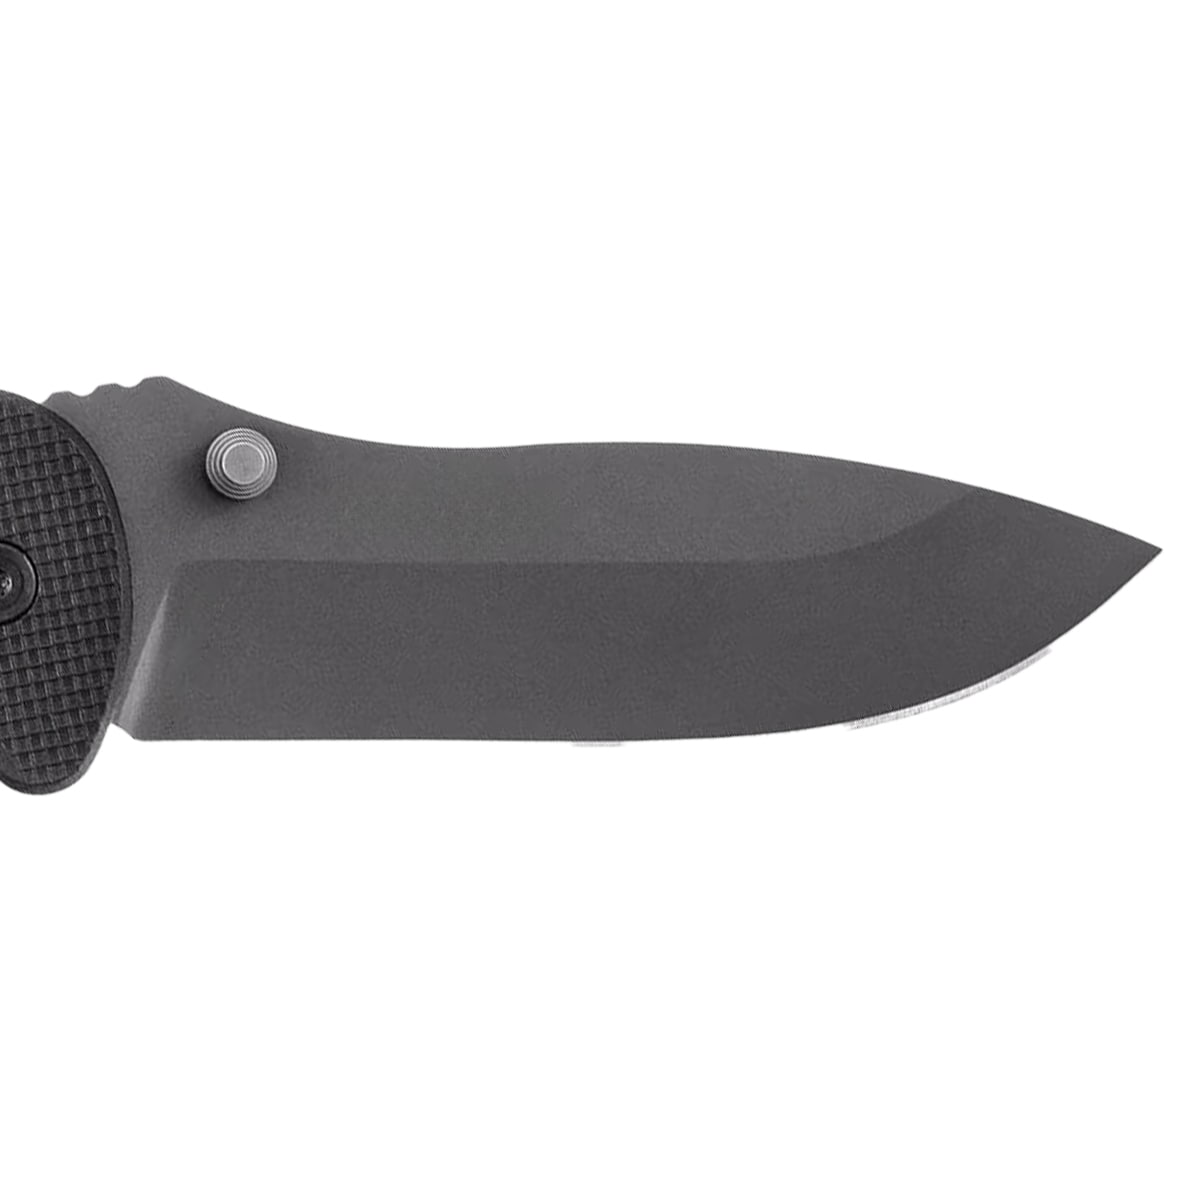 Nóż składany ratowniczy ESP RK-01 Rescue Knife - Black